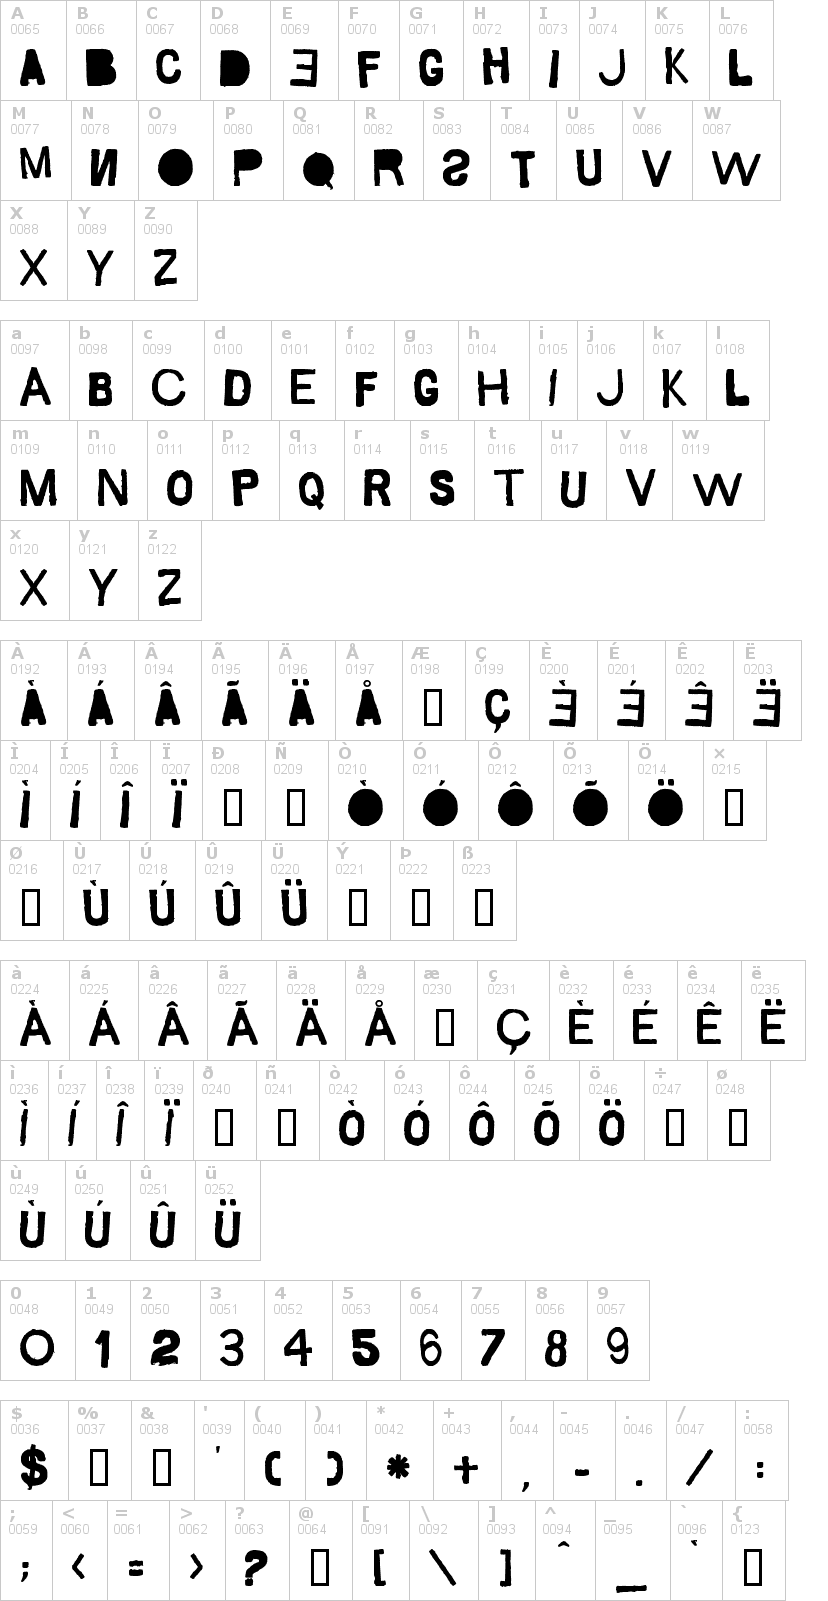 Lettere dell'alfabeto del font saco-de-pao con le quali è possibile realizzare adesivi prespaziati